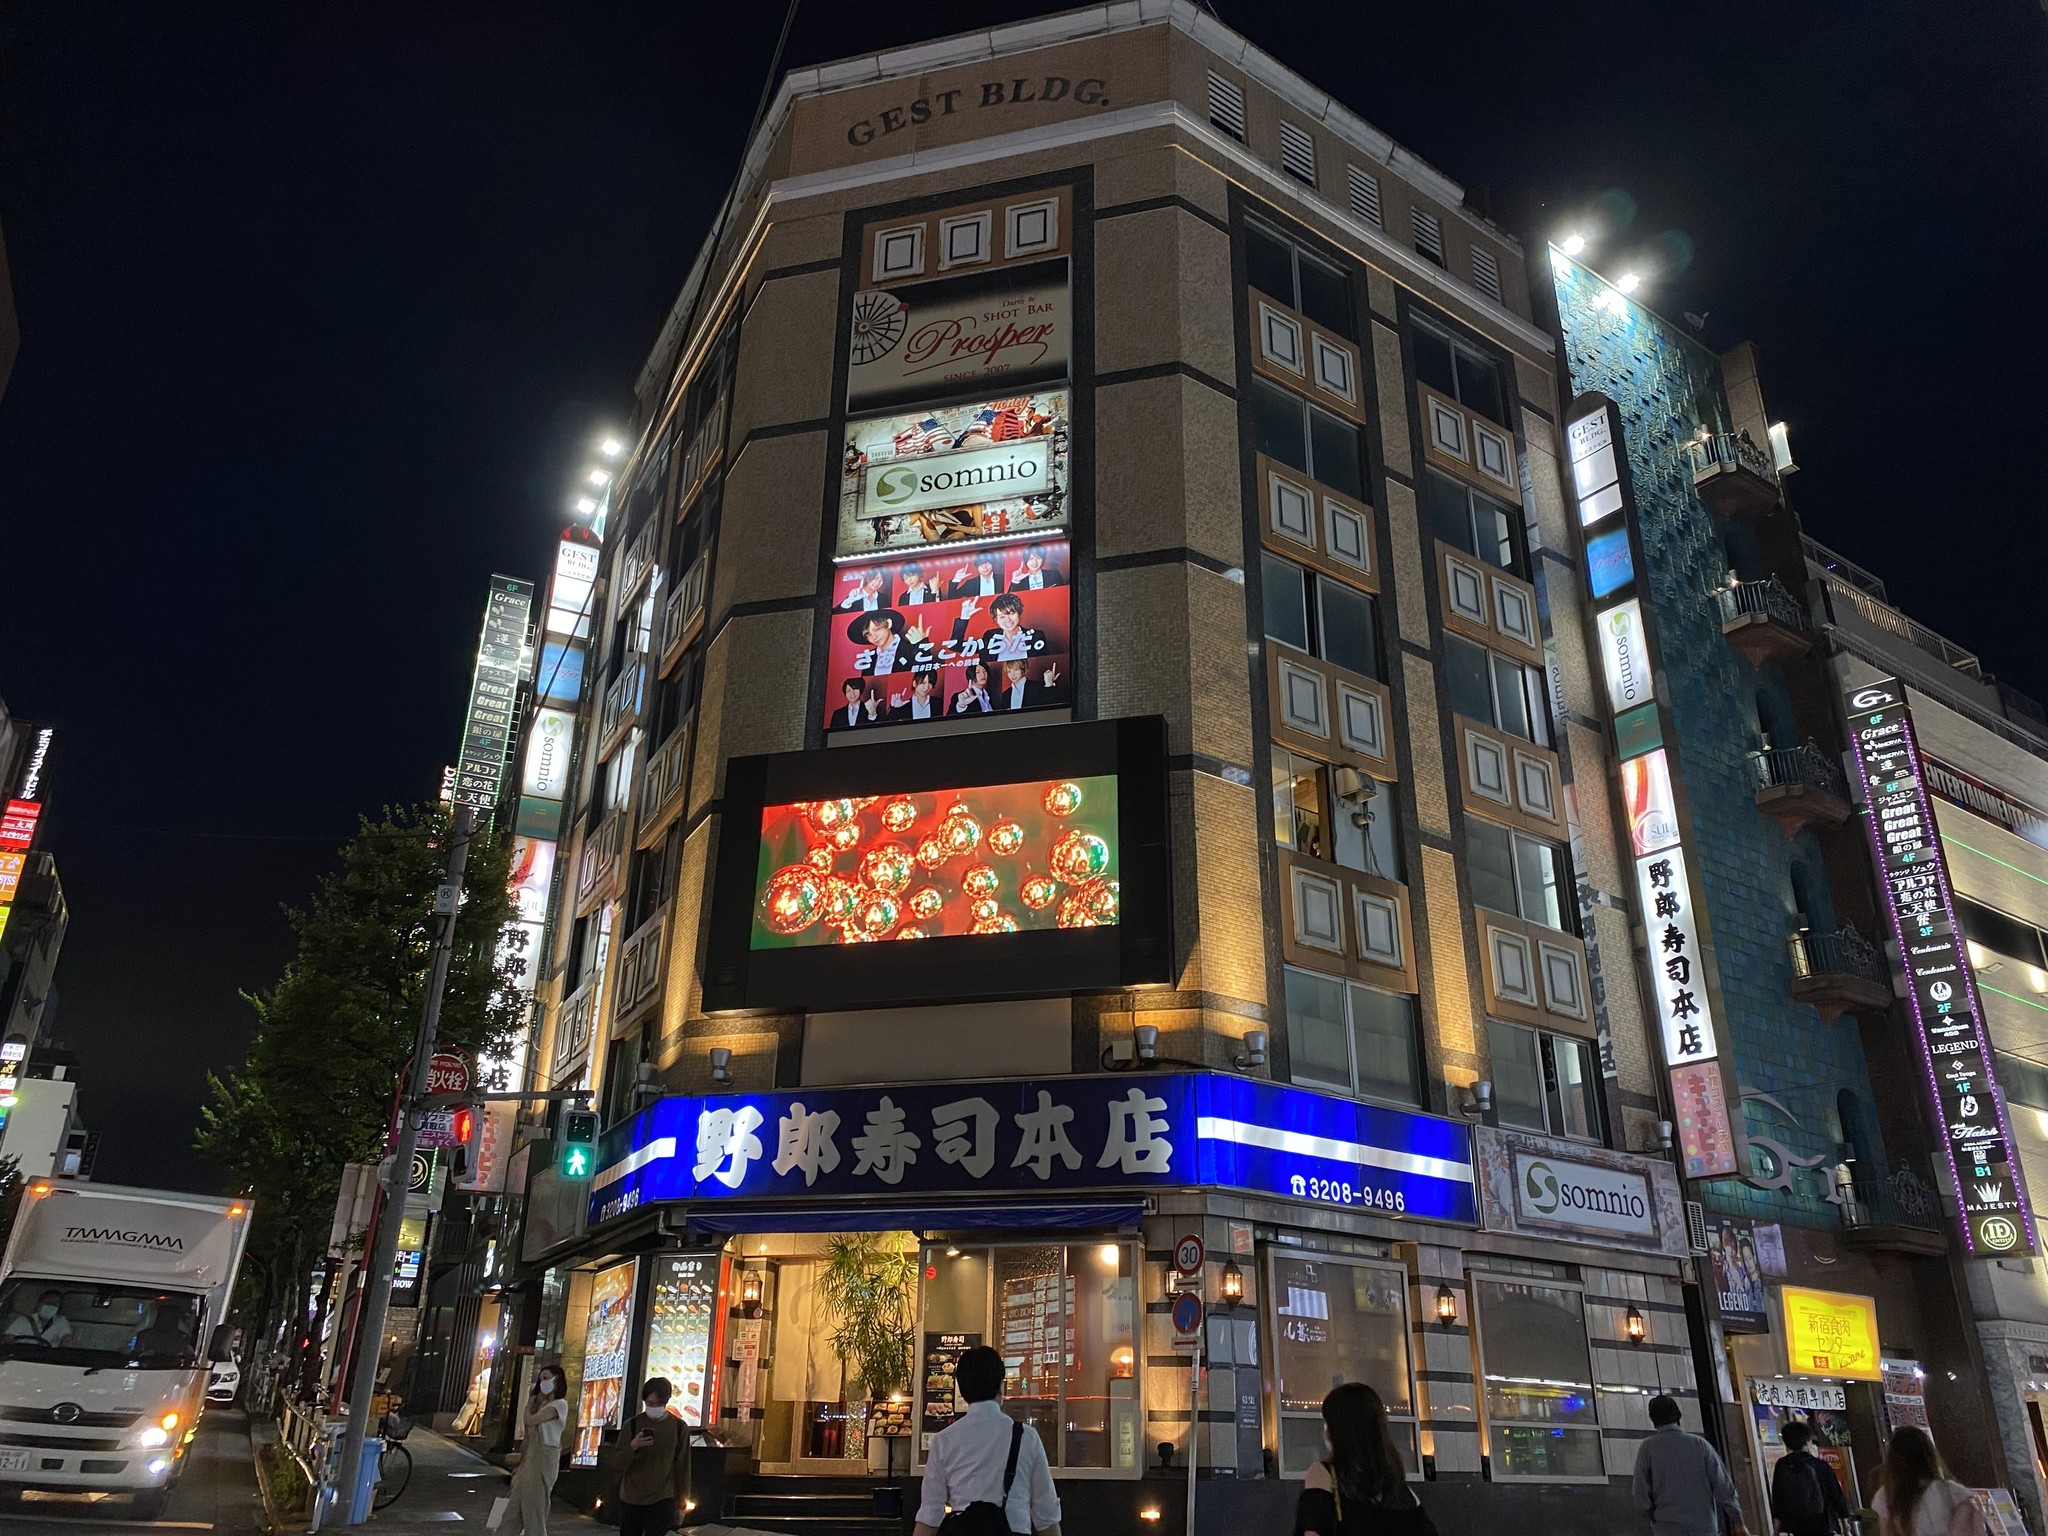 歌舞伎町の中心部 Gest Bldg の壁面にledビジョンを設置しました Lm Tokyo株式会社のプレスリリース